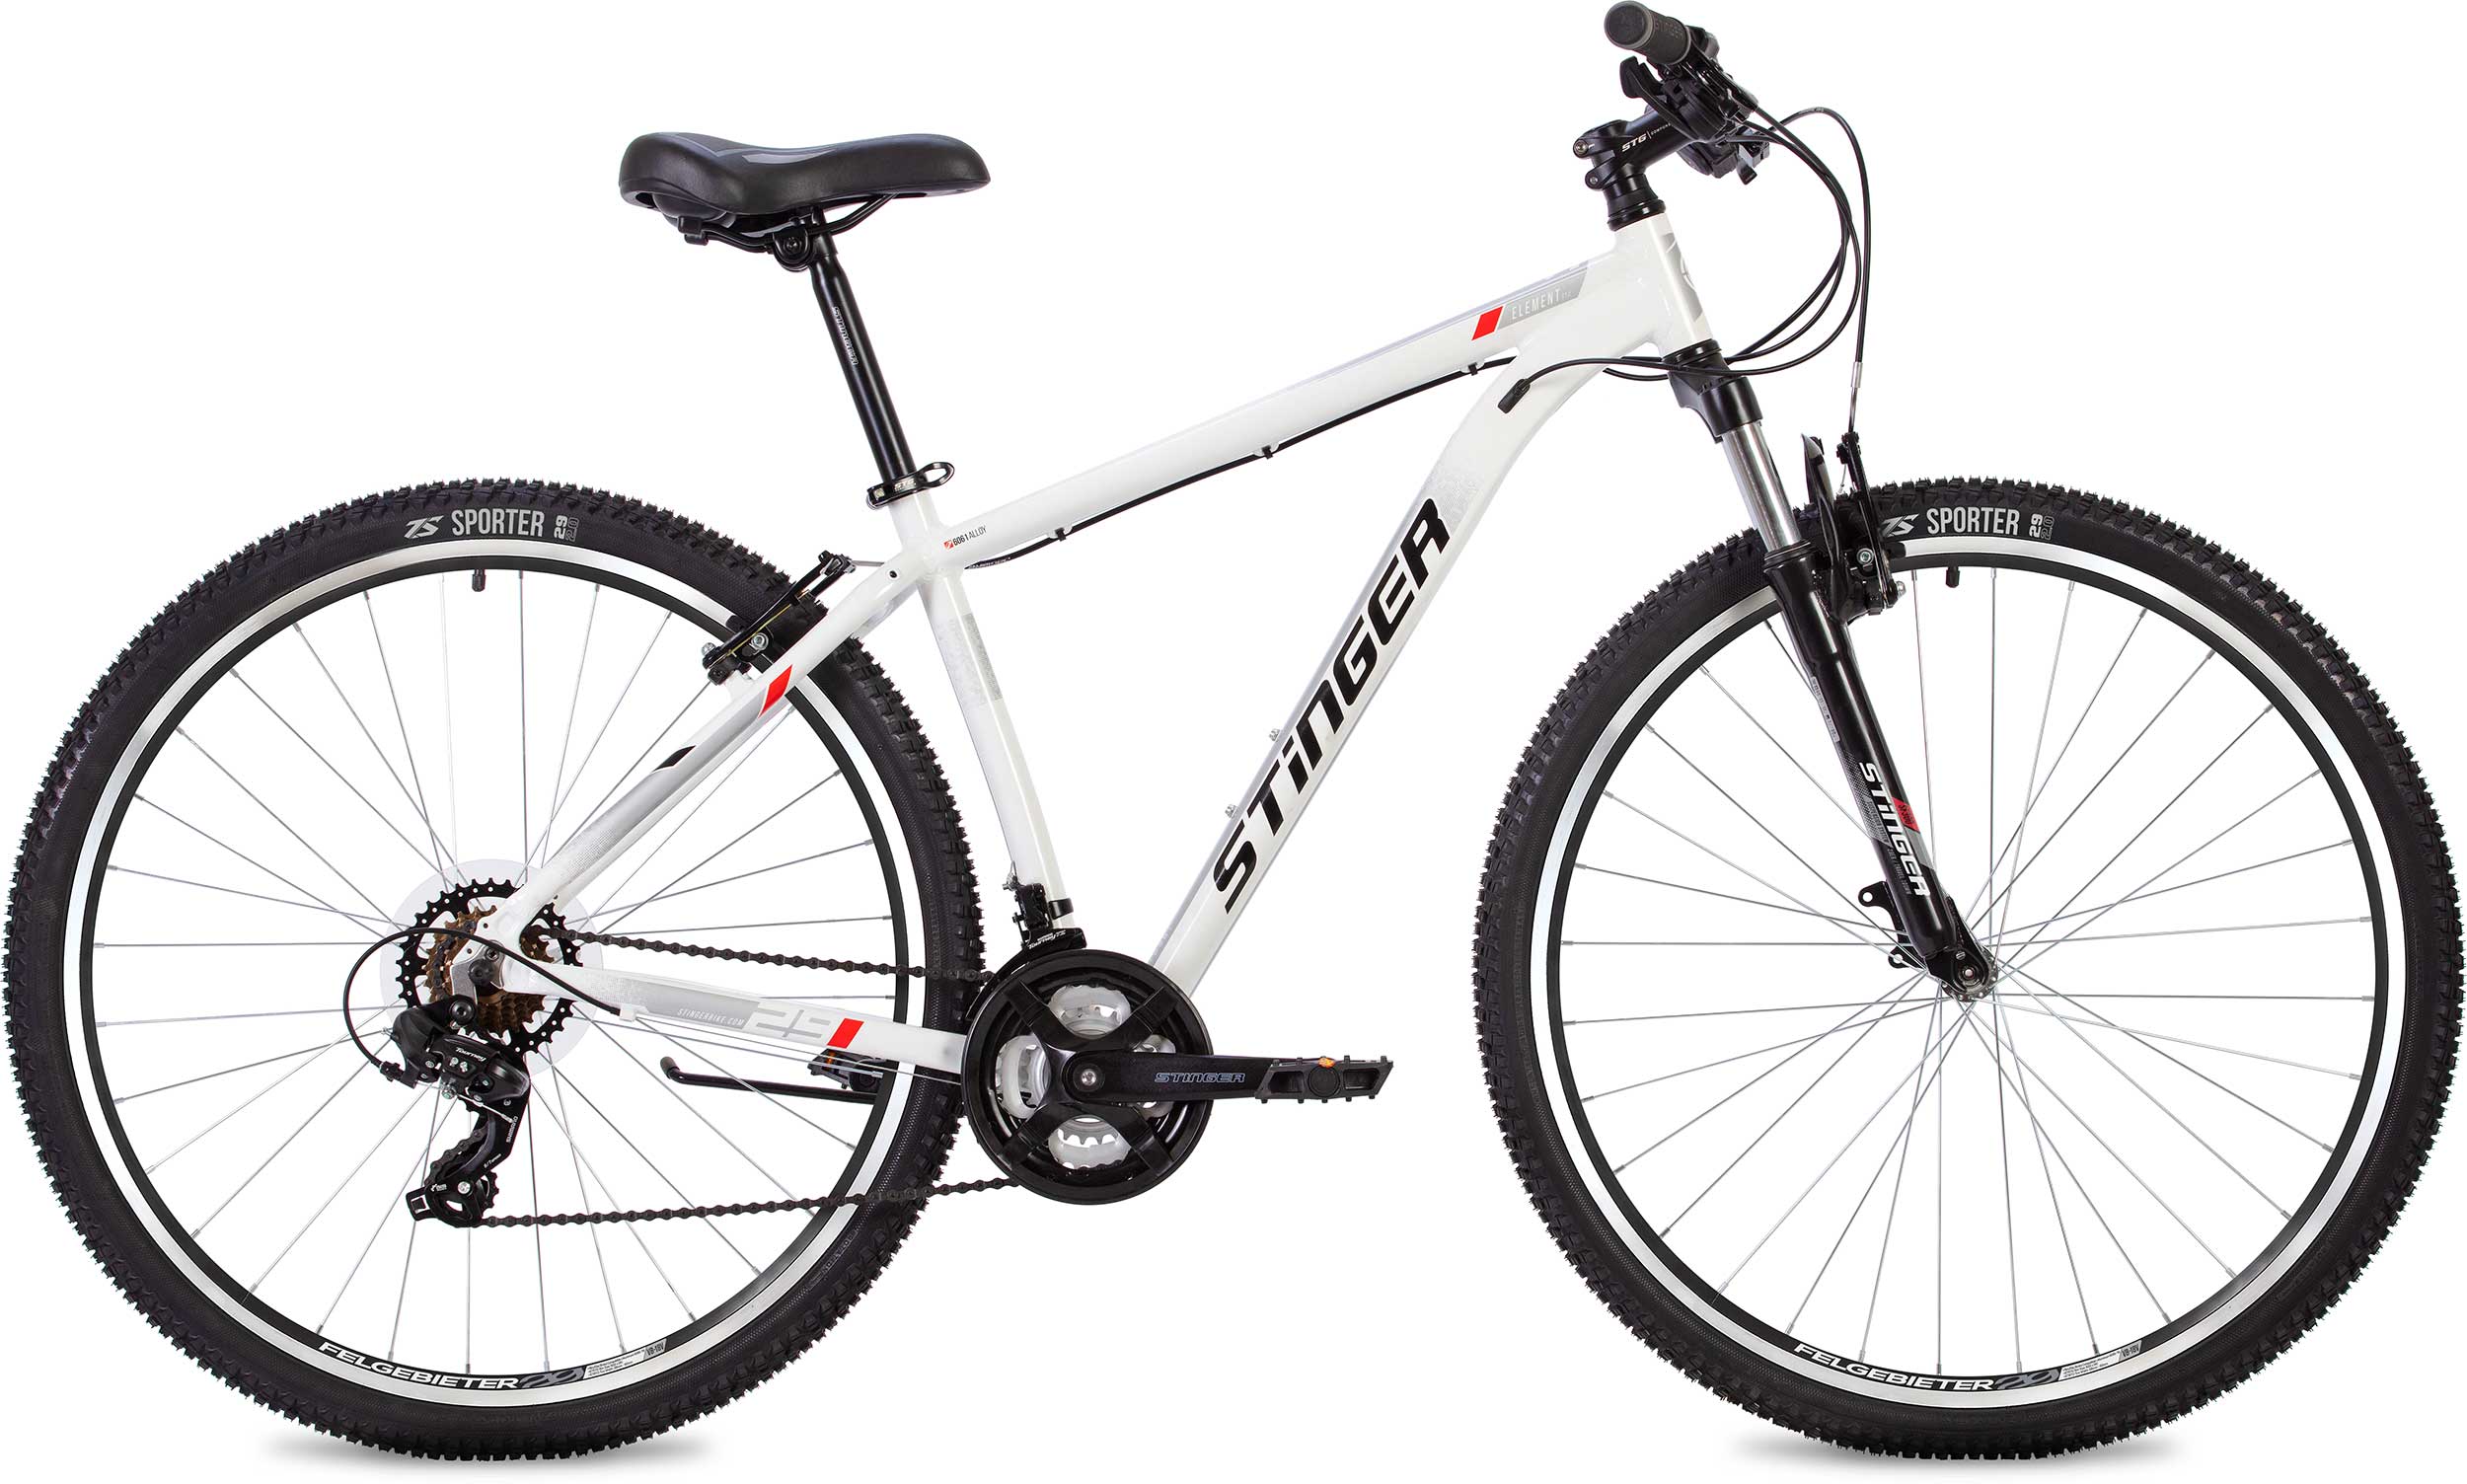  Отзывы о Горном велосипеде Stinger Element STD 26 2020